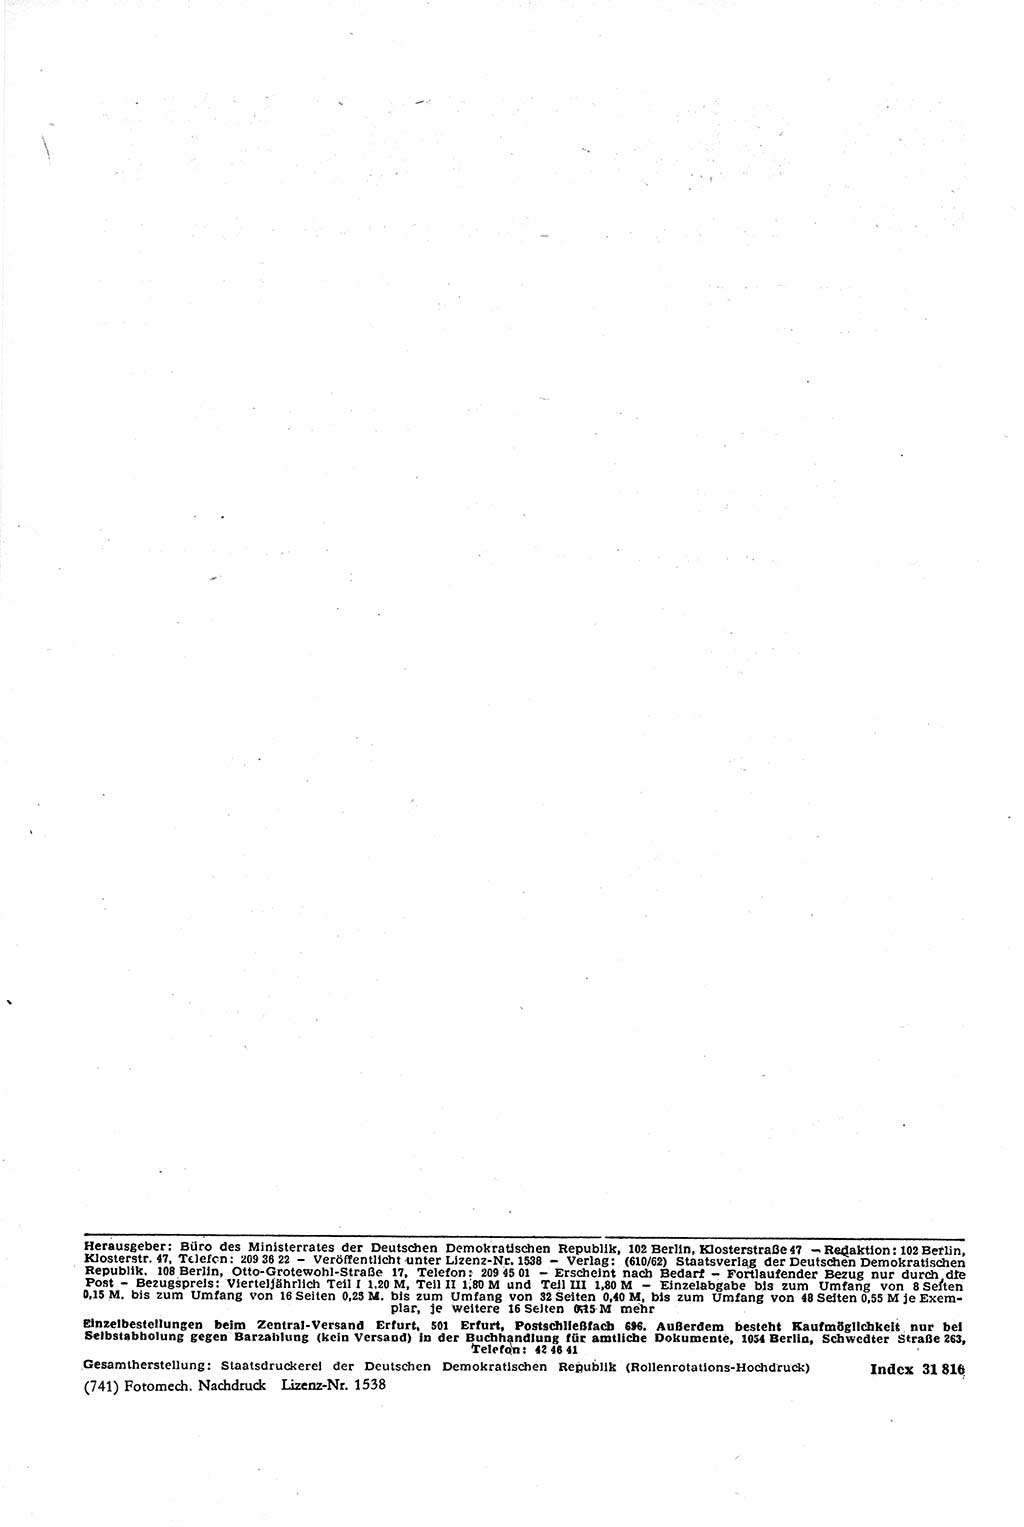 Gesetzblatt (GBl.) der Deutschen Demokratischen Republik (DDR) Teil Ⅰ 1970, Seite 104 (GBl. DDR Ⅰ 1970, S. 104)